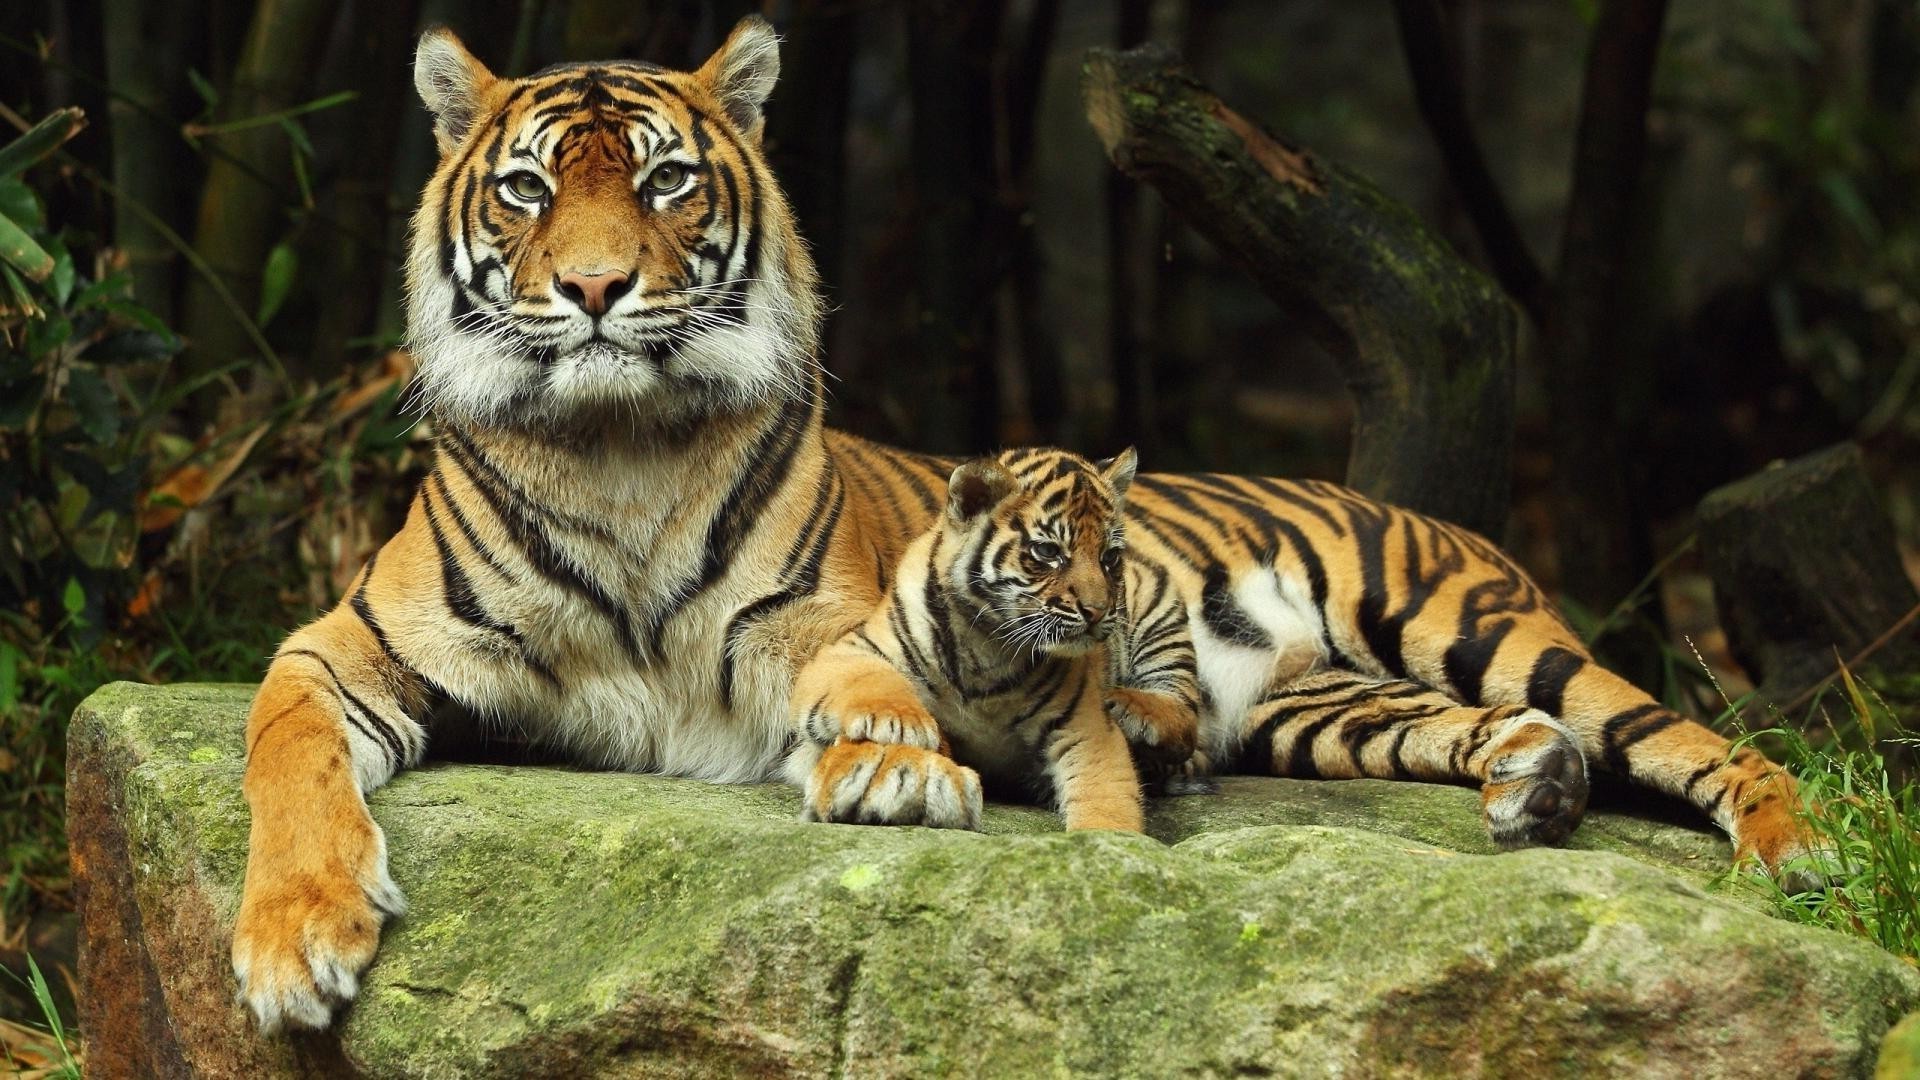 тигры тигр кошка дикой природы джунгли млекопитающее охотник хищник зоопарк животное дикий мясоед опасность охота полоса агрессии большой сафари мех глядя сибирский